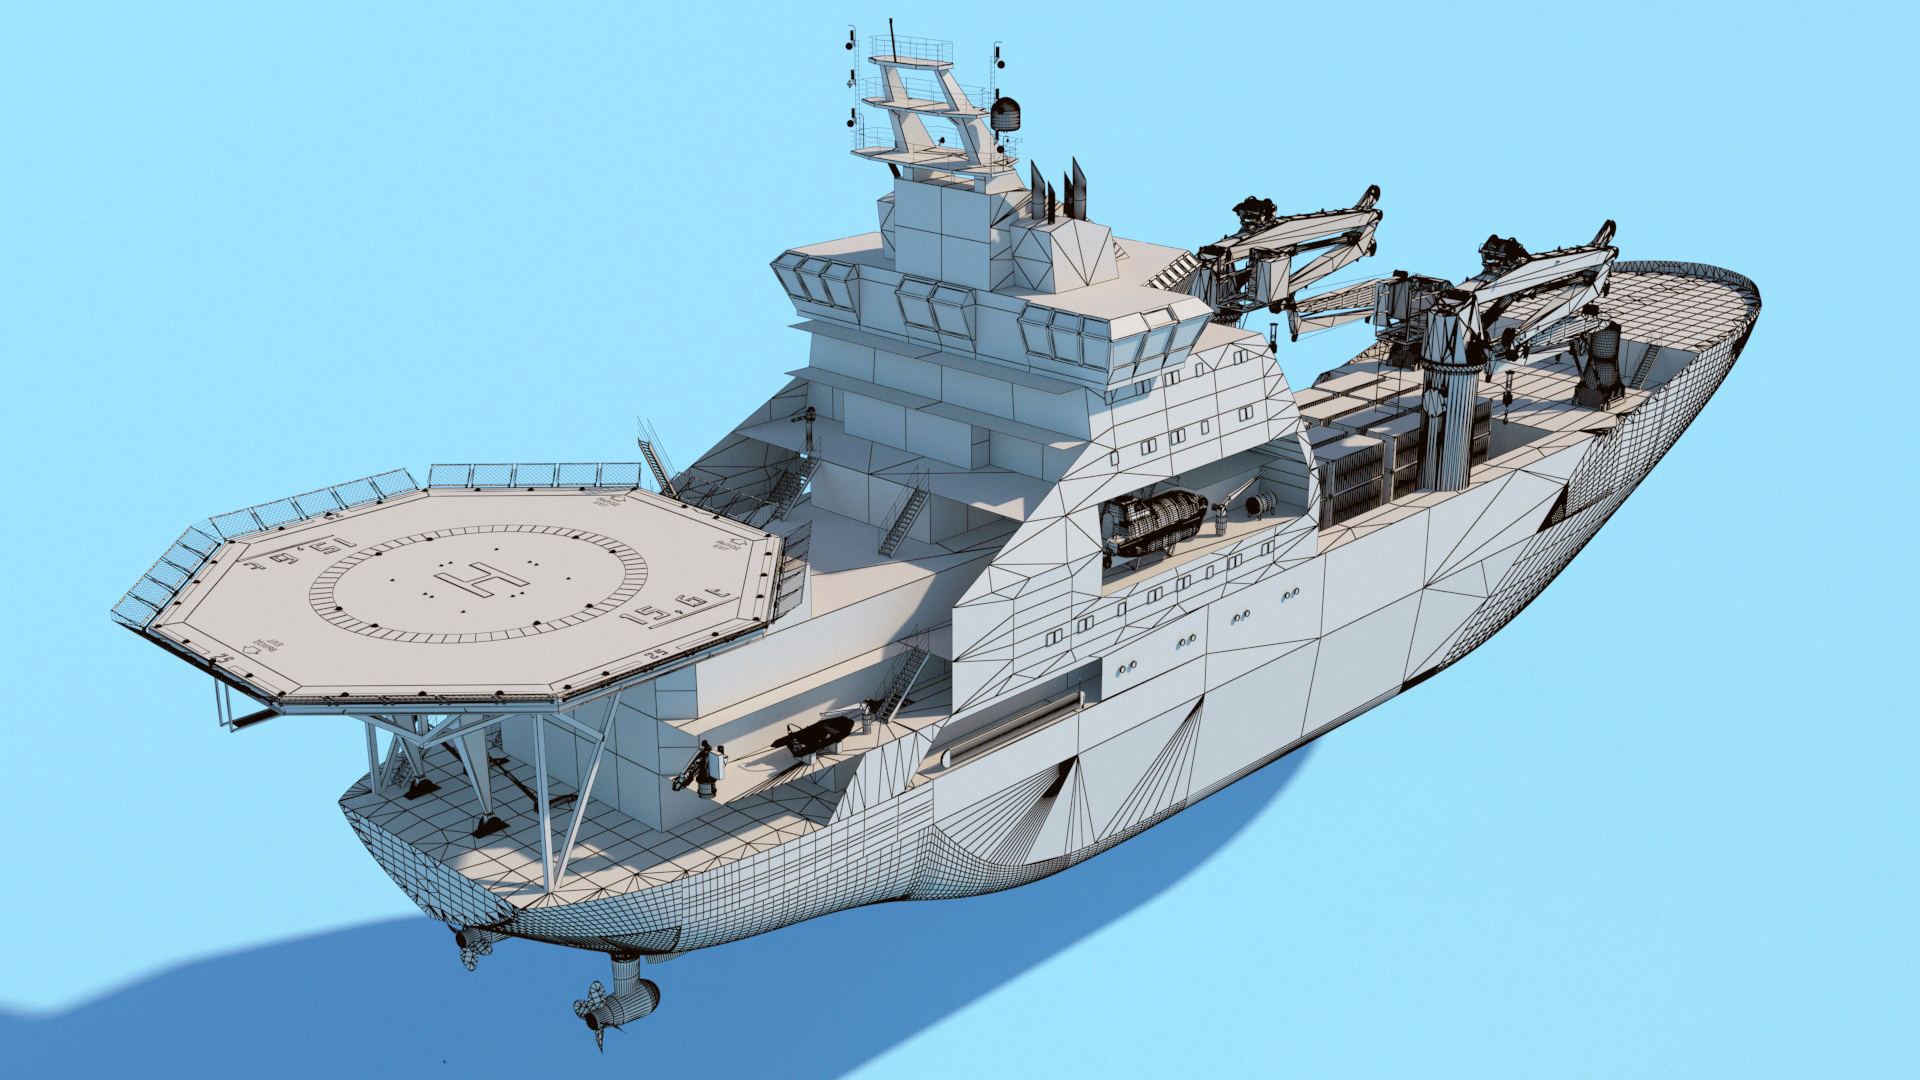 Модели-копии деревянных парусных кораблей на заказ — Студия D63